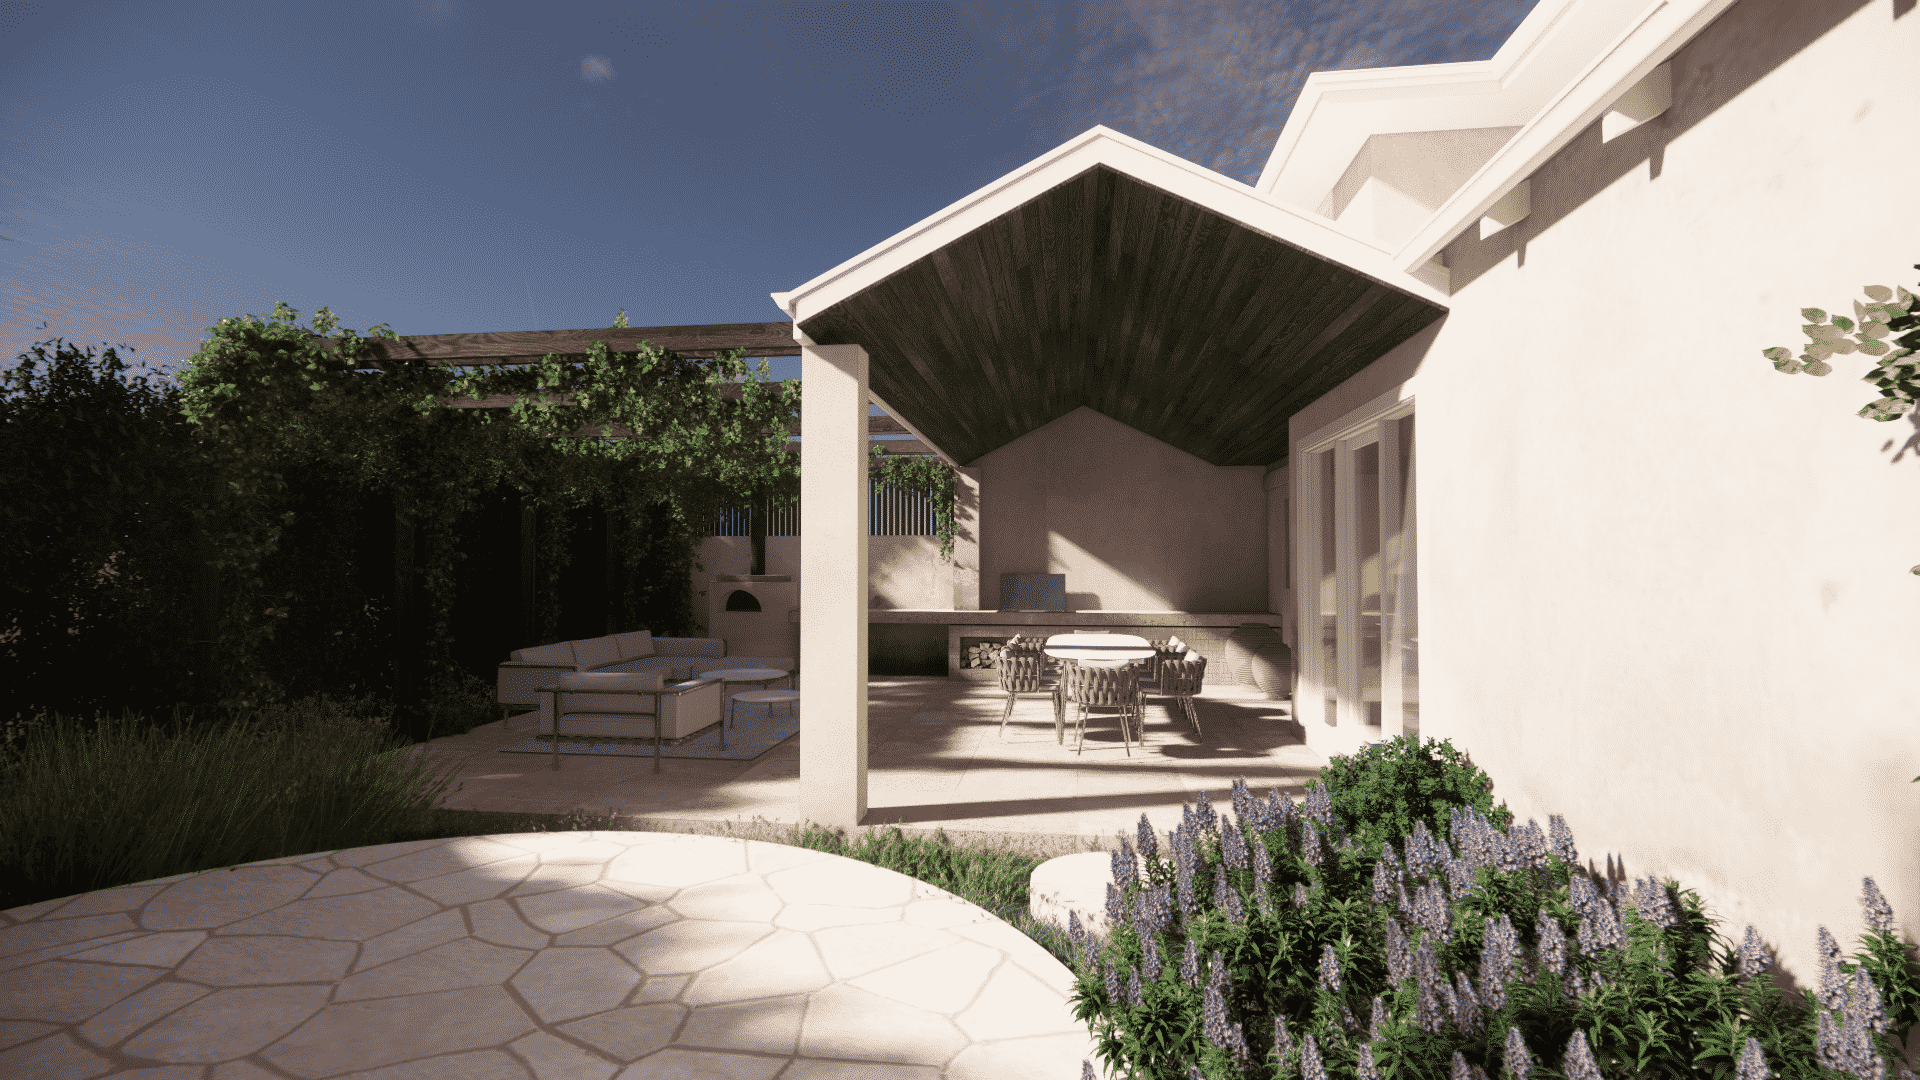 A landscape design render of a mediterranean garden with an outdoor kitchen